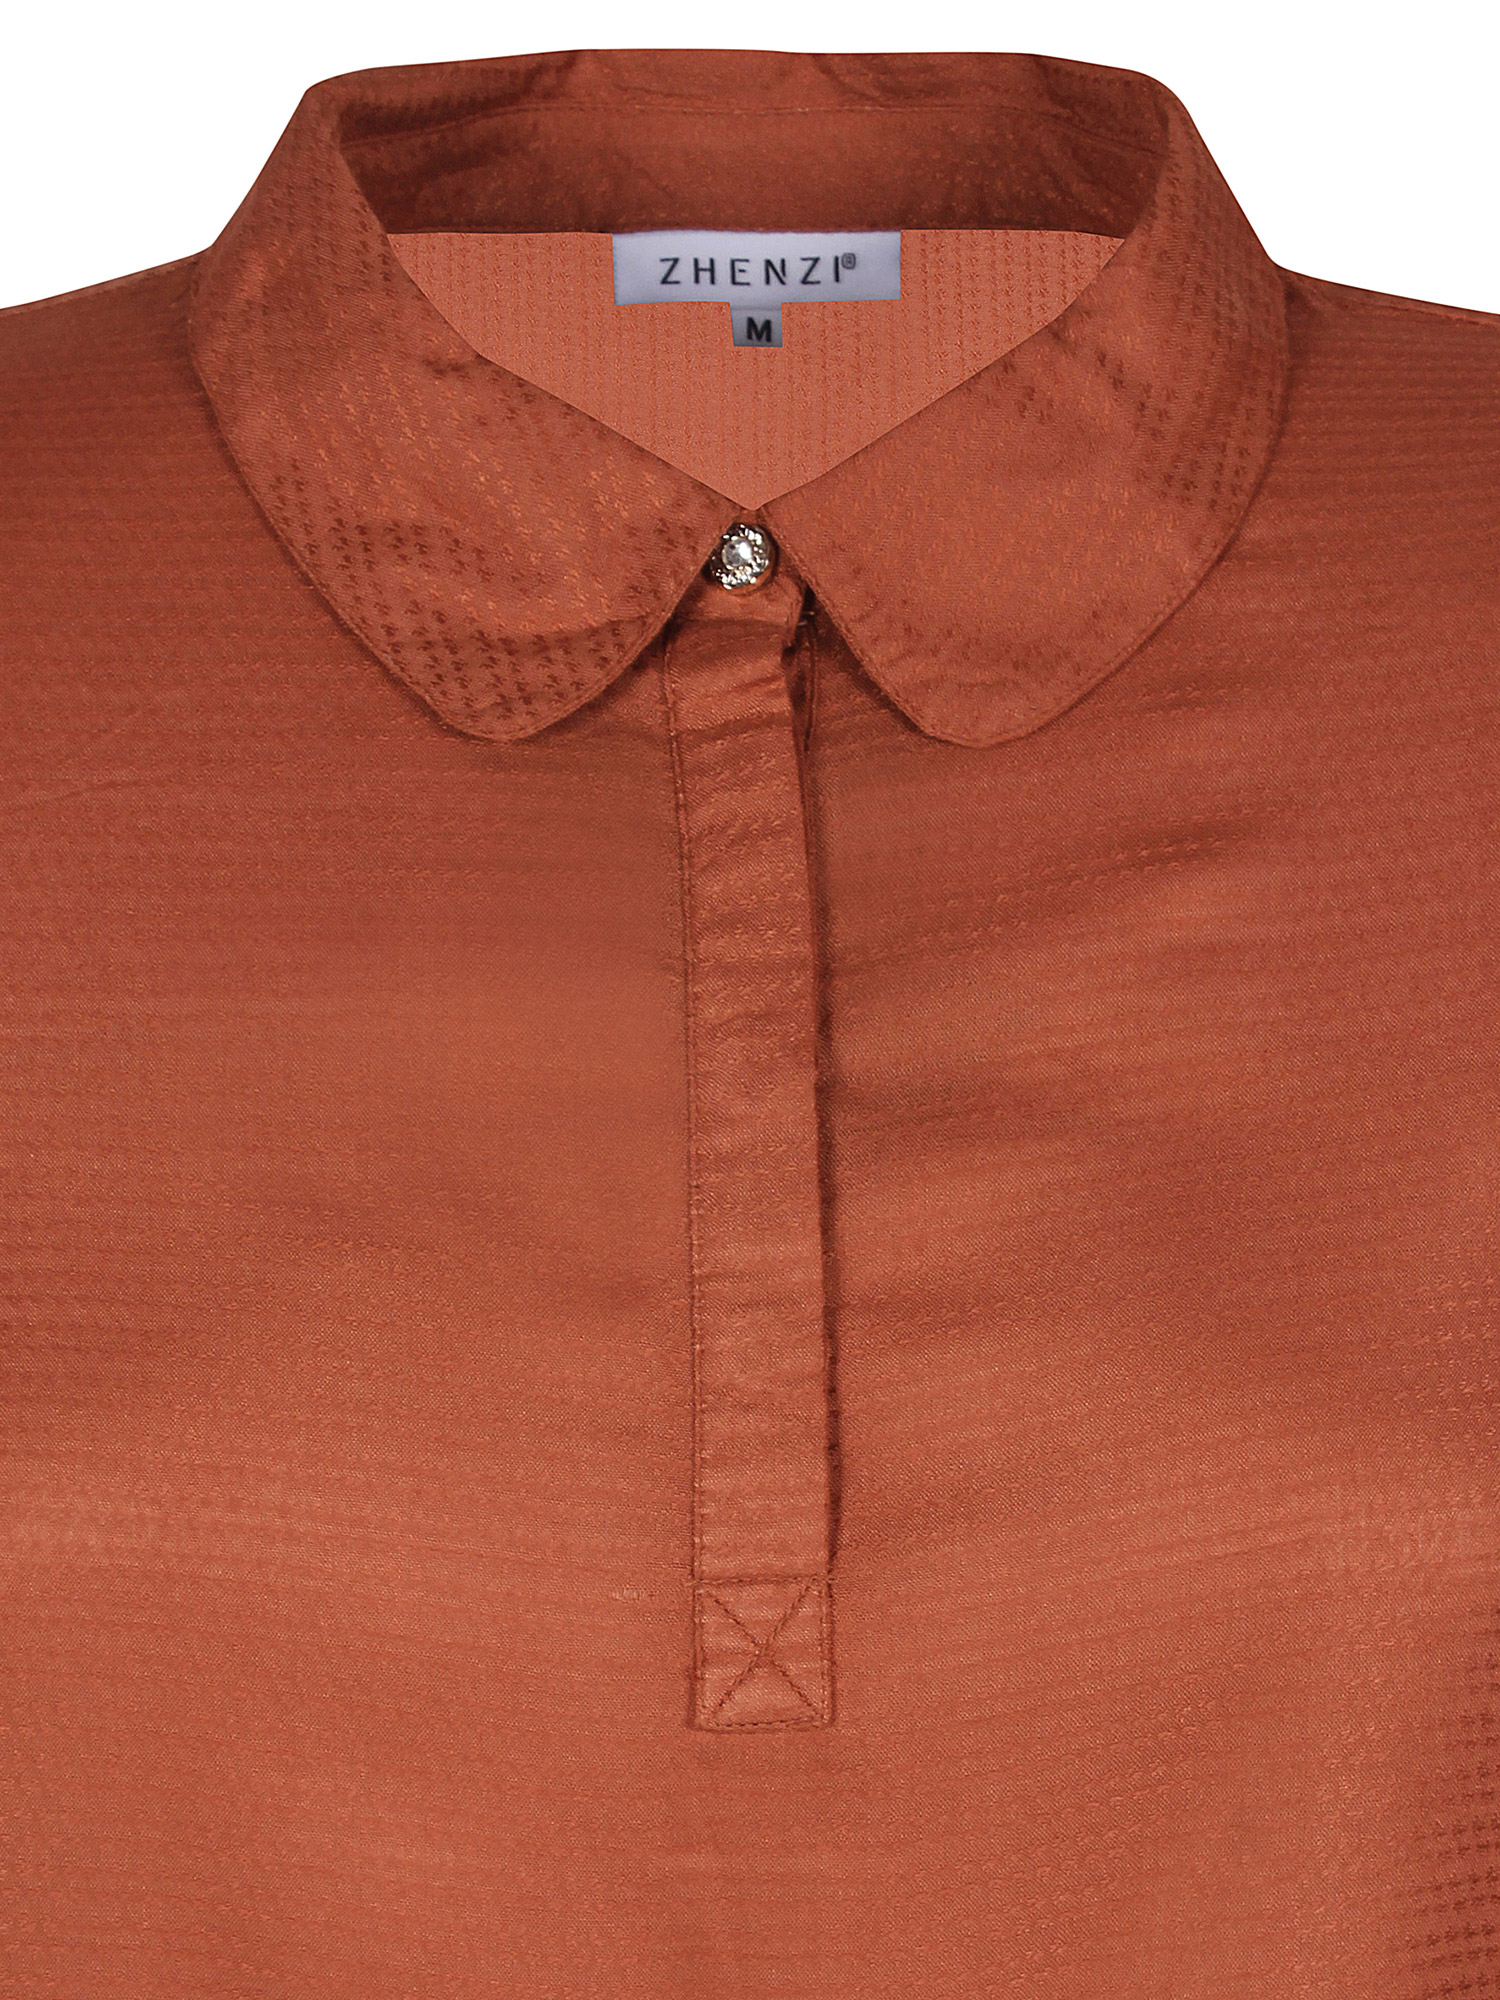 Skjorte Bluse I Viskose fra Zhenzi